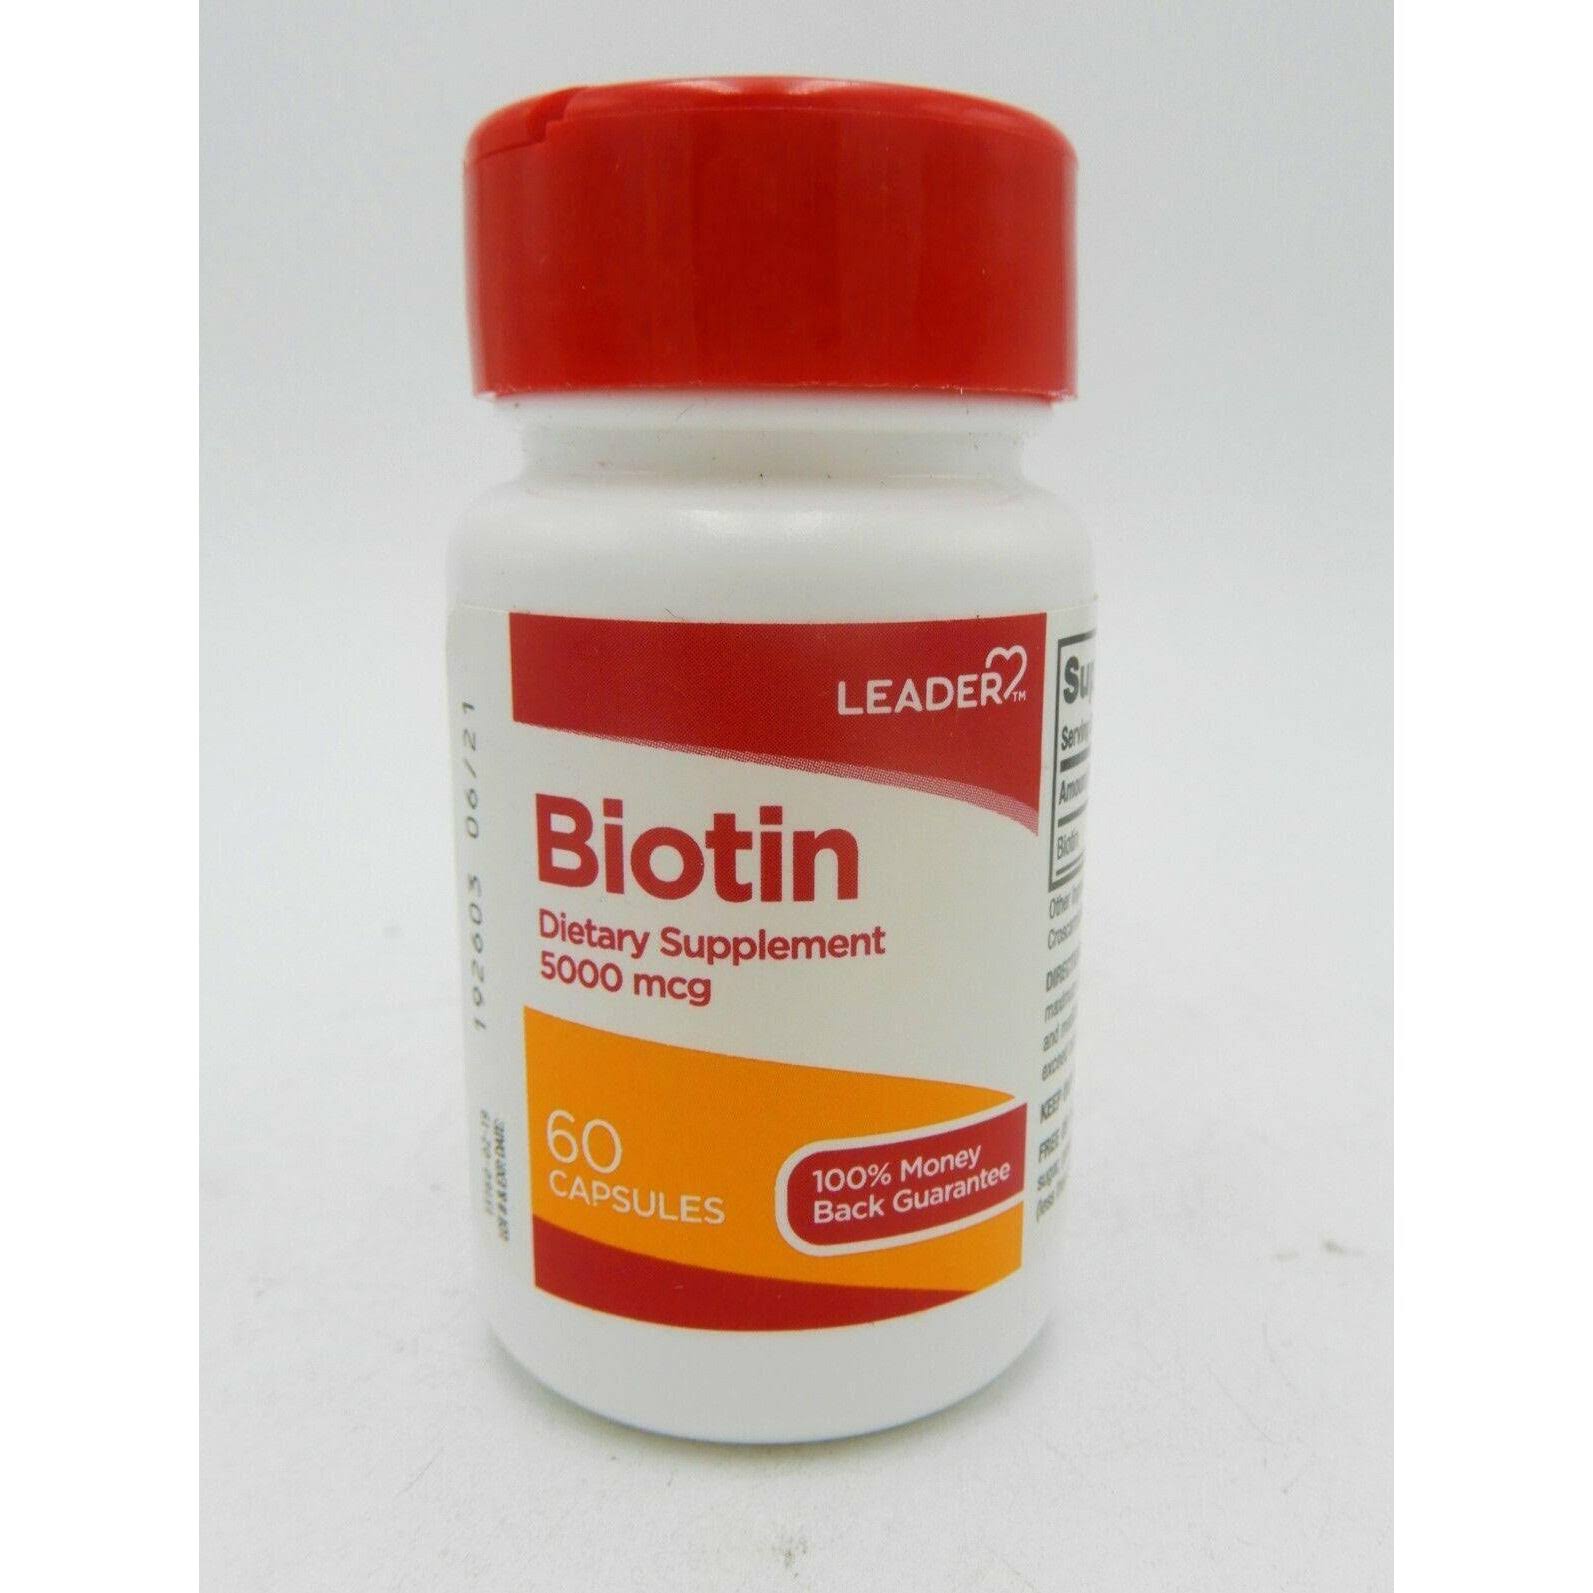 Leader Biotin, 5000 mcg, Capsules - 60 capsules